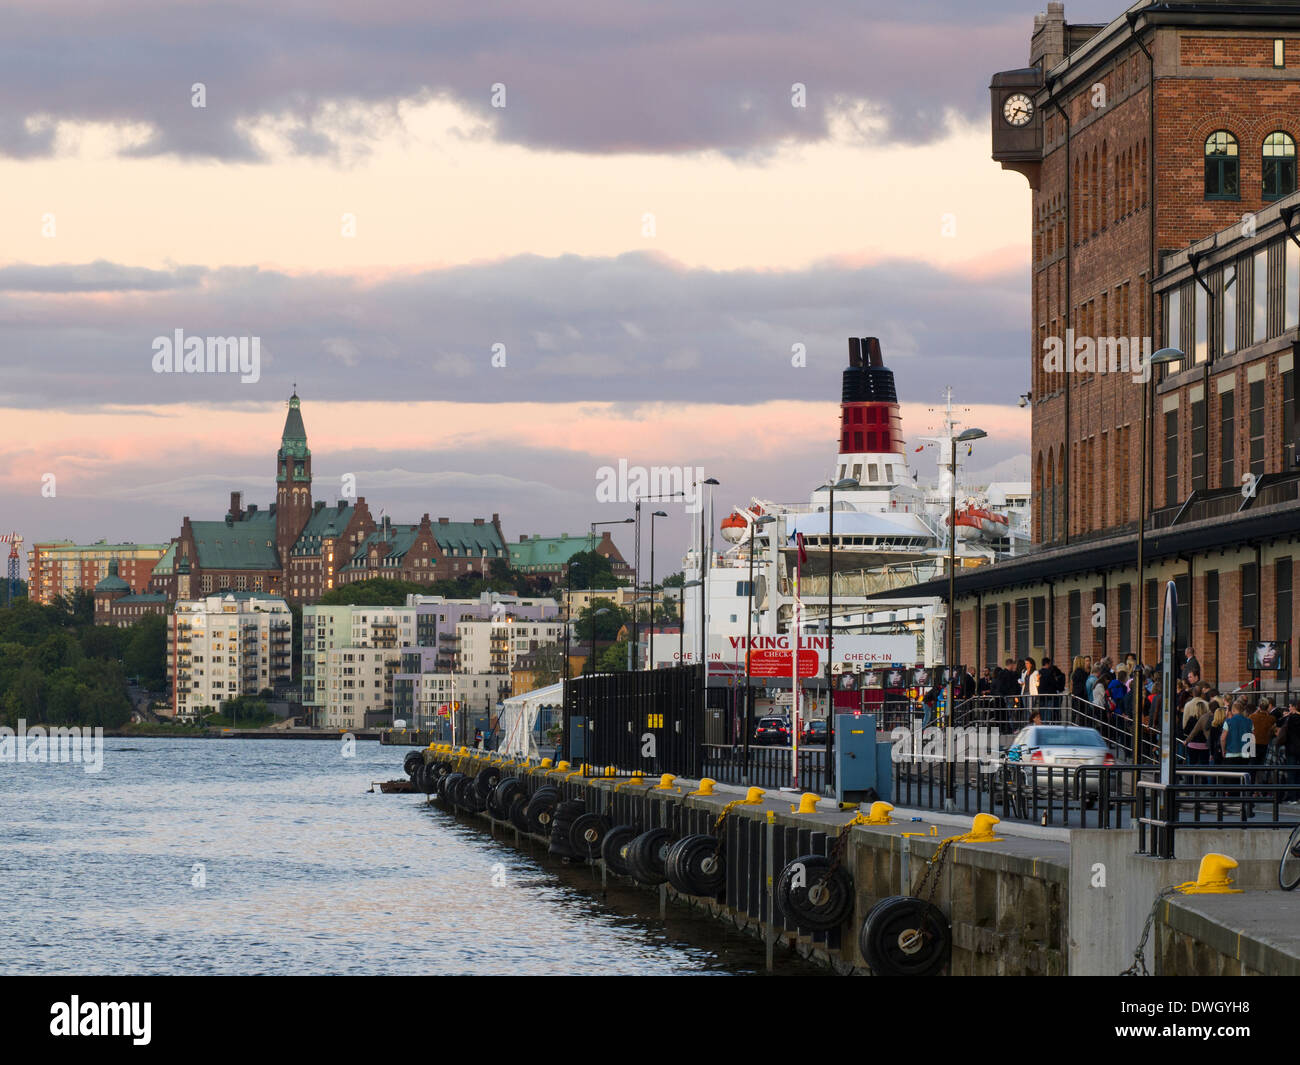 Vue vers l'est sur Södermalm, à partir de l'extérieur de la photographie, musée de Stockholm Fotografiska. Un ferry Viking Line est vu. Banque D'Images